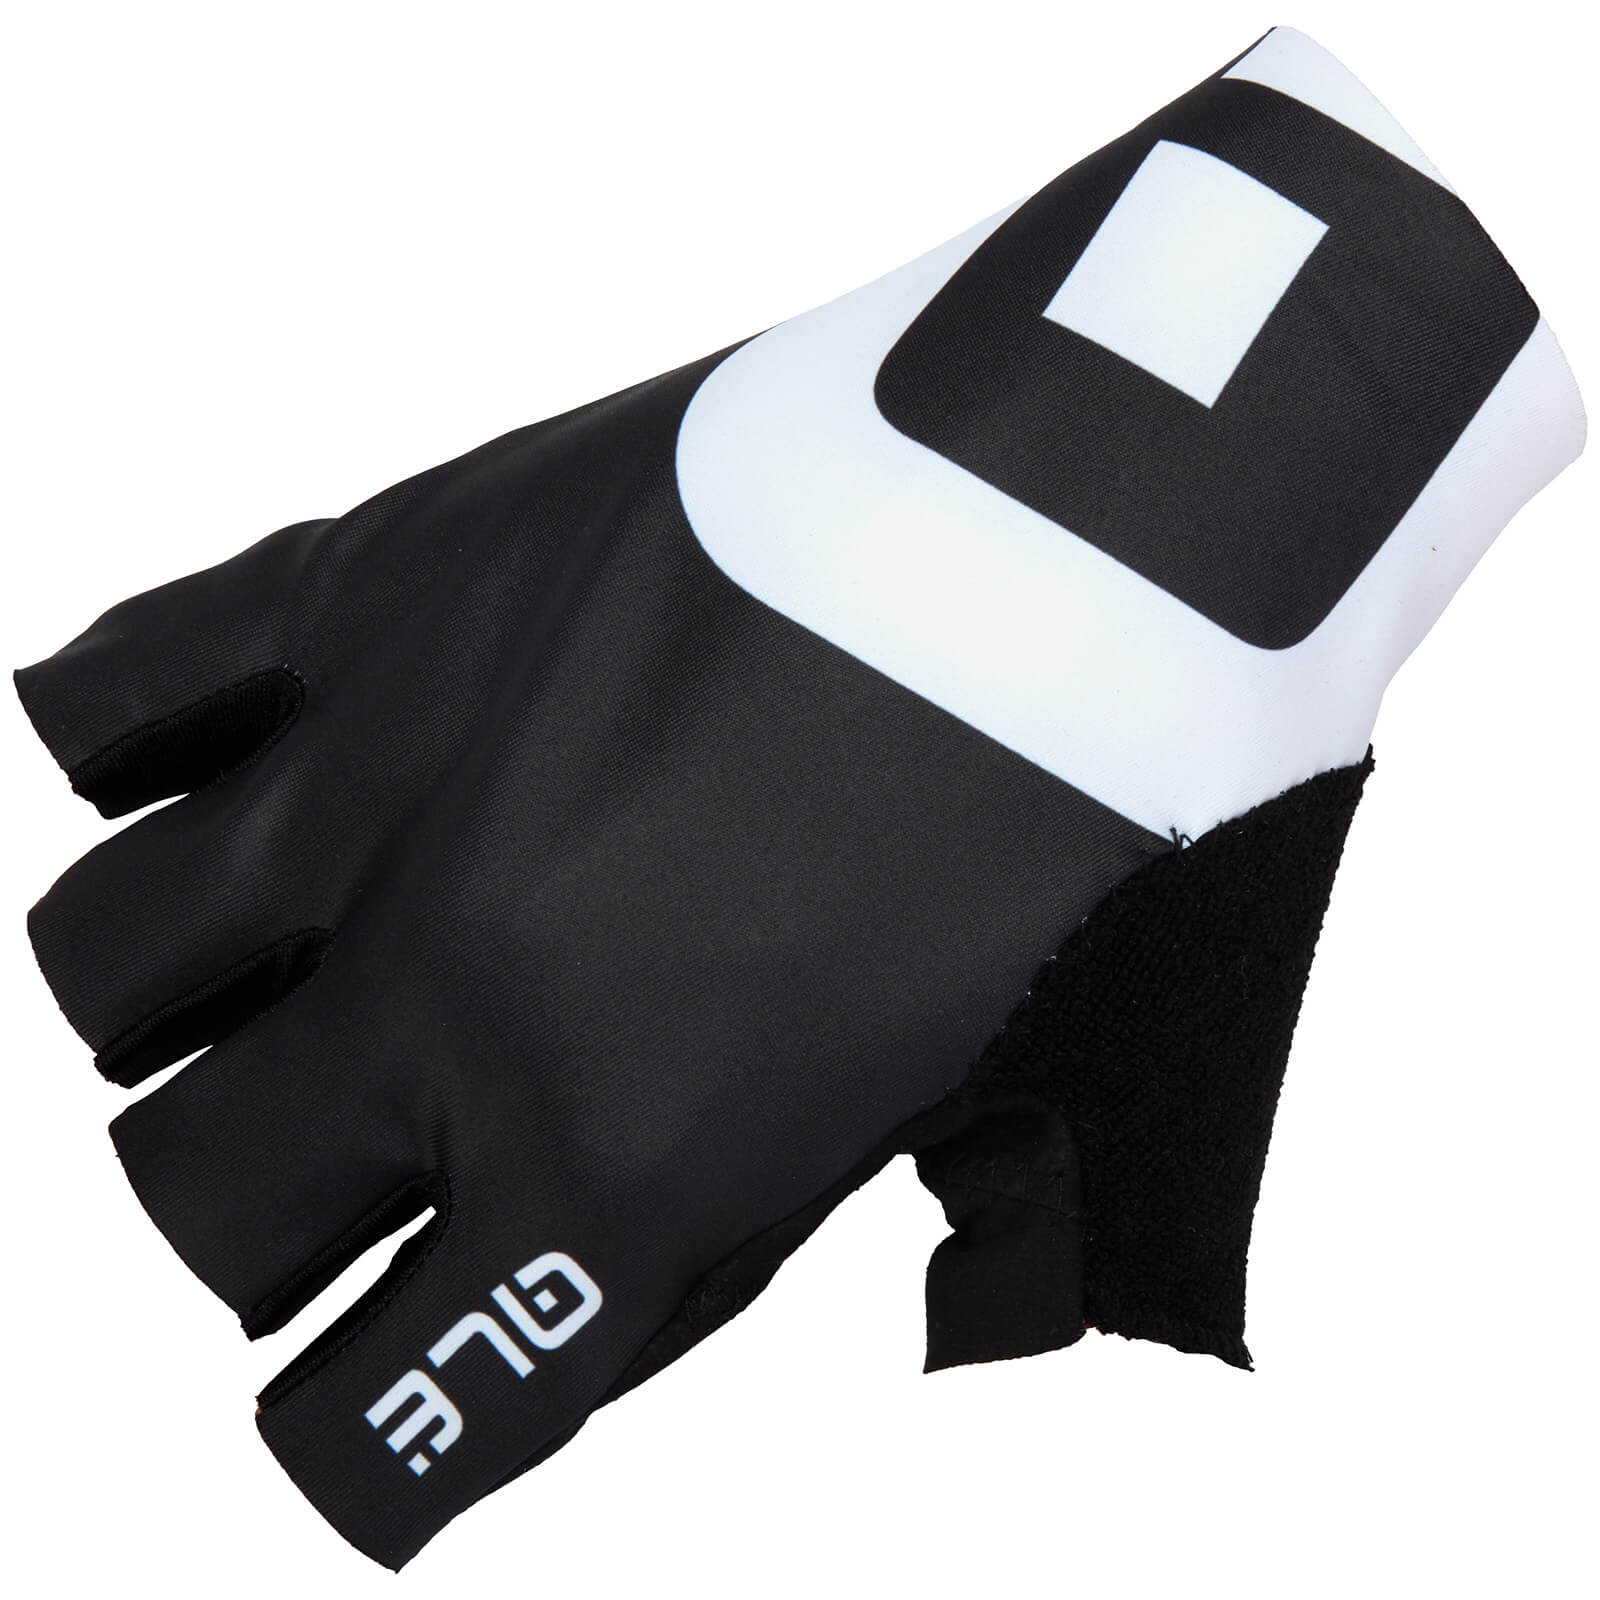 Alé Air Gloves - L - Black/White